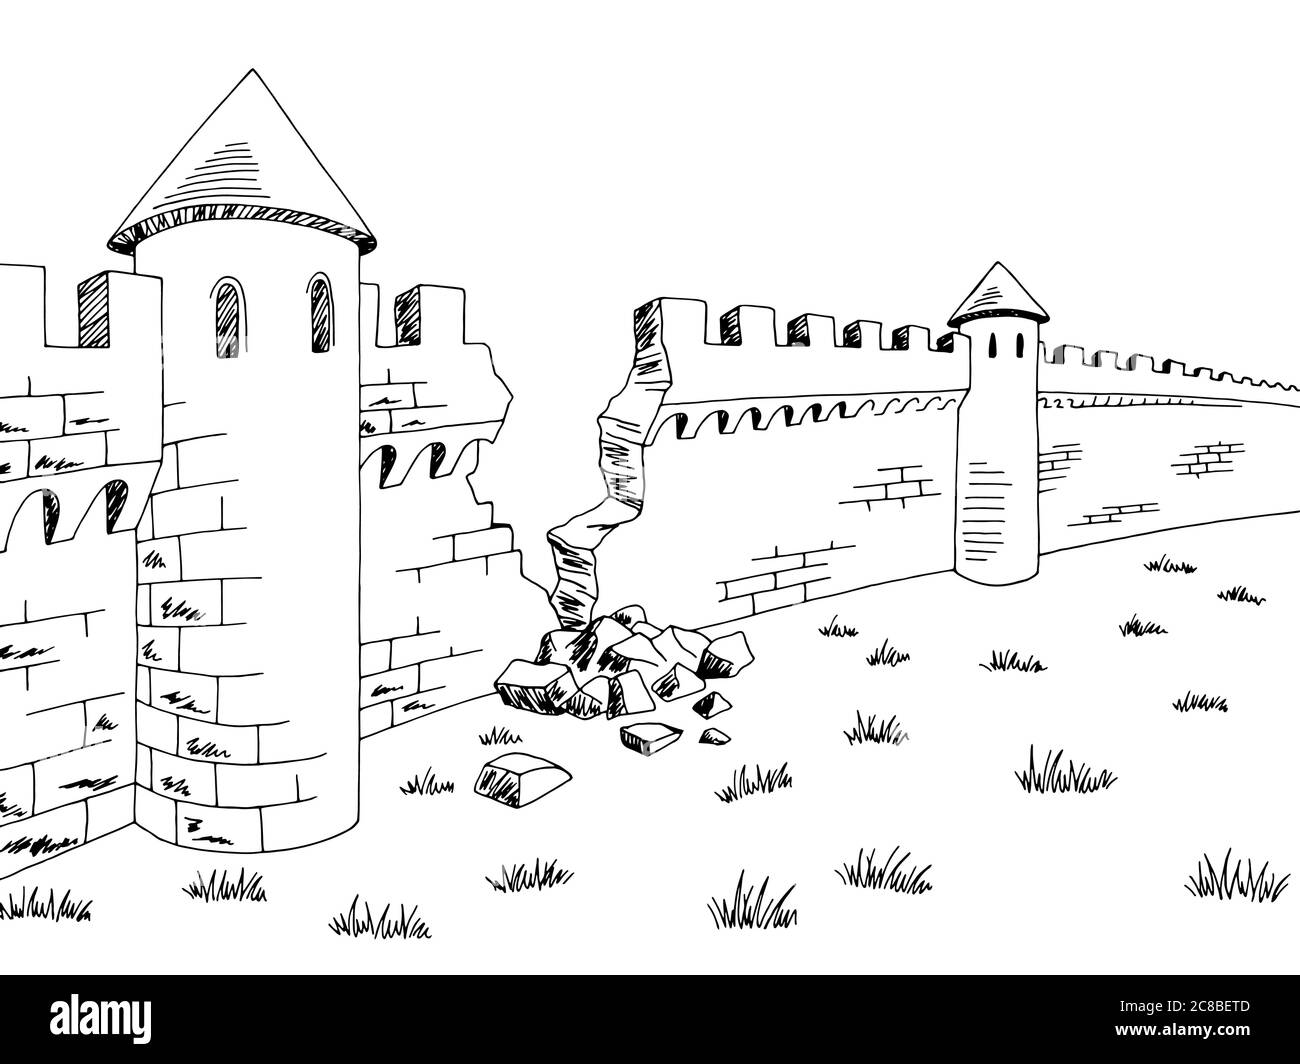 Gebrochene Wand mittelalterliche Burg Grafik schwarz weiß Skizze Illustration Vektor Stock Vektor